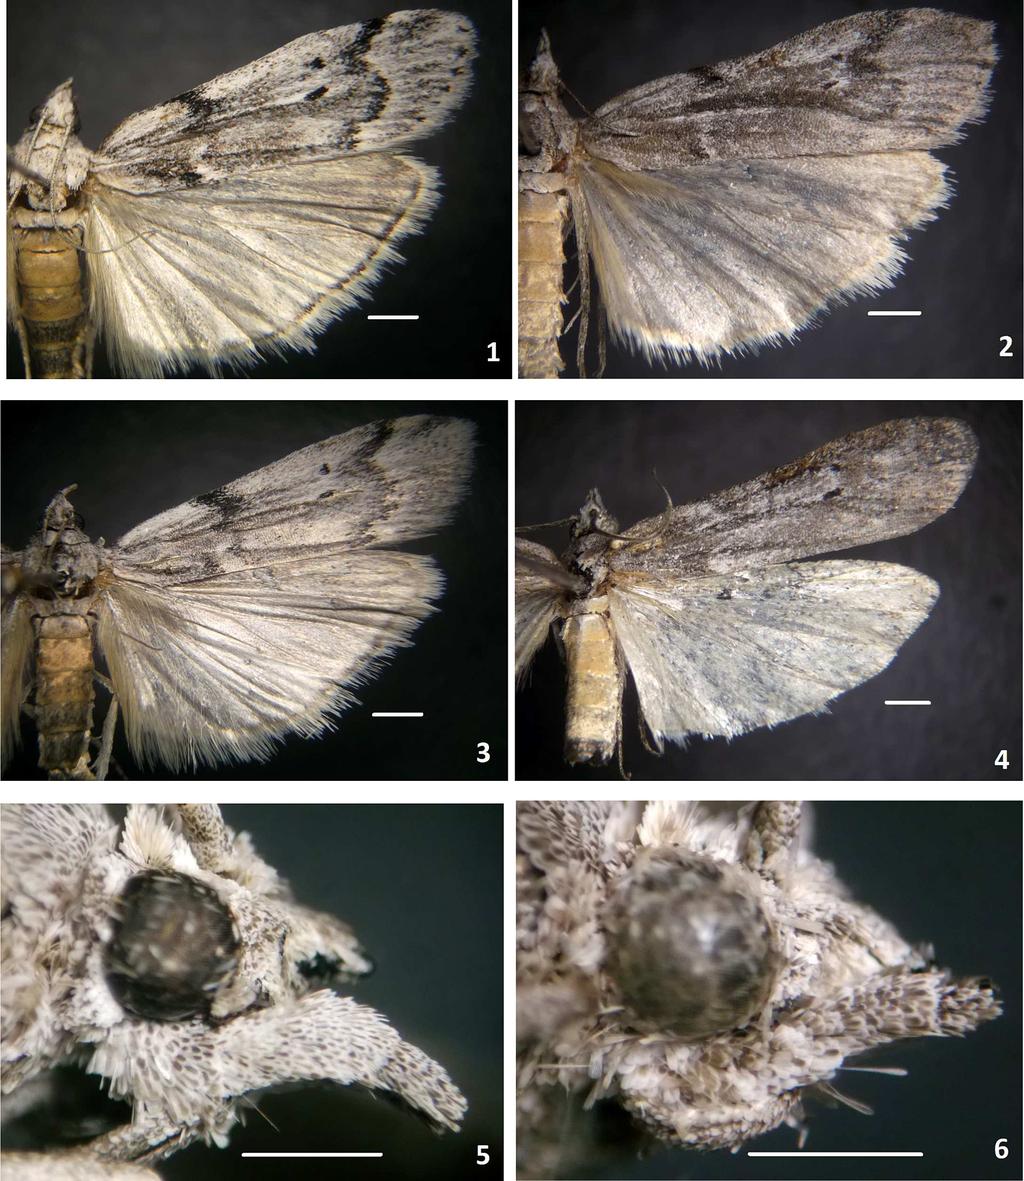 6 Insecta Mundi 0654, August 2018 Cepeda Figures 1 6. Passadena mistralae n. sp. habitus.